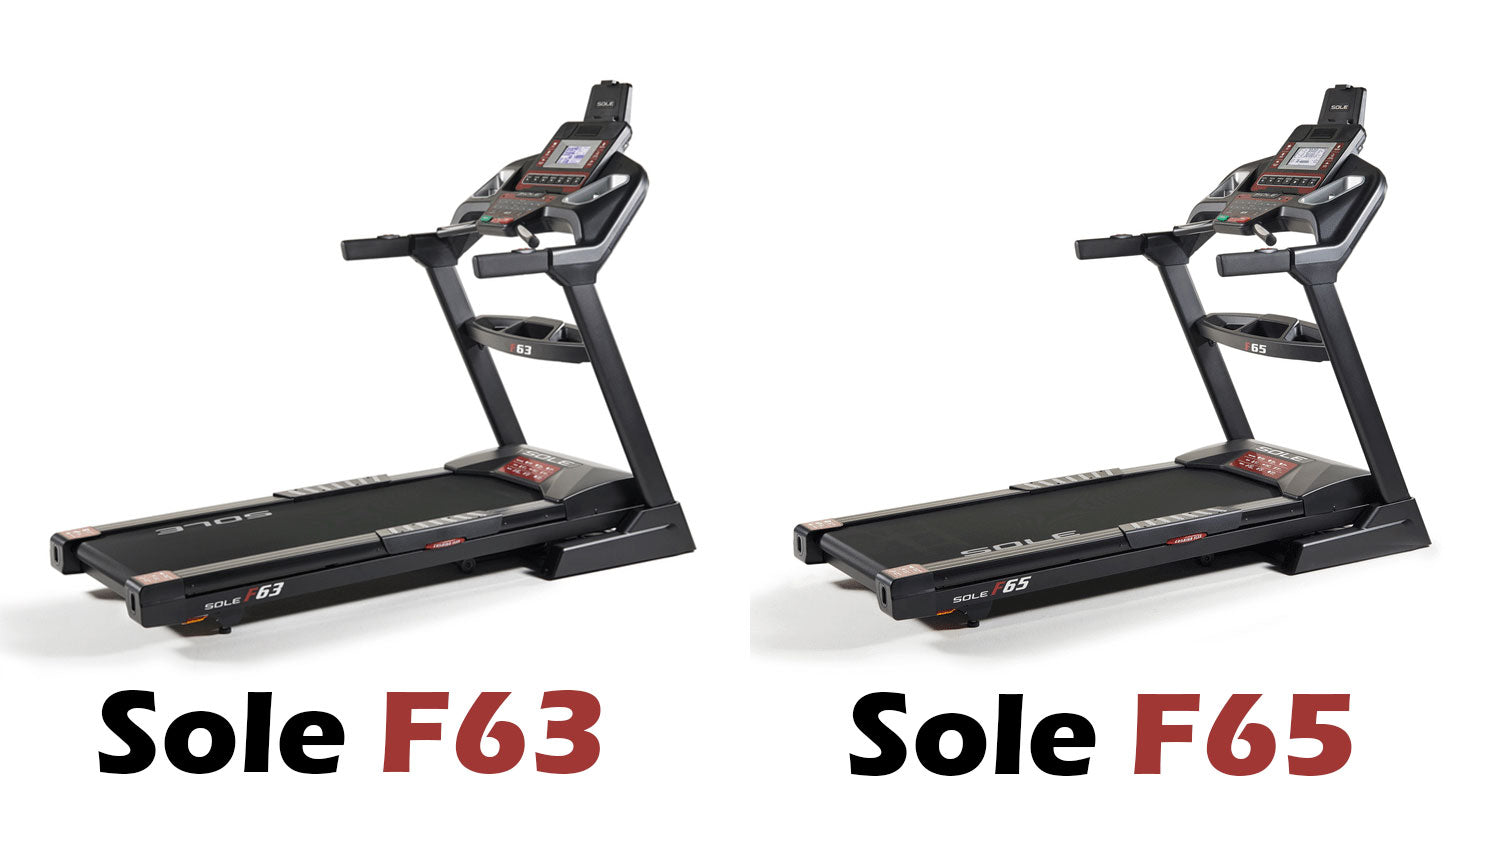 Sole F63 vs Sole F65 Treadmill Comparison